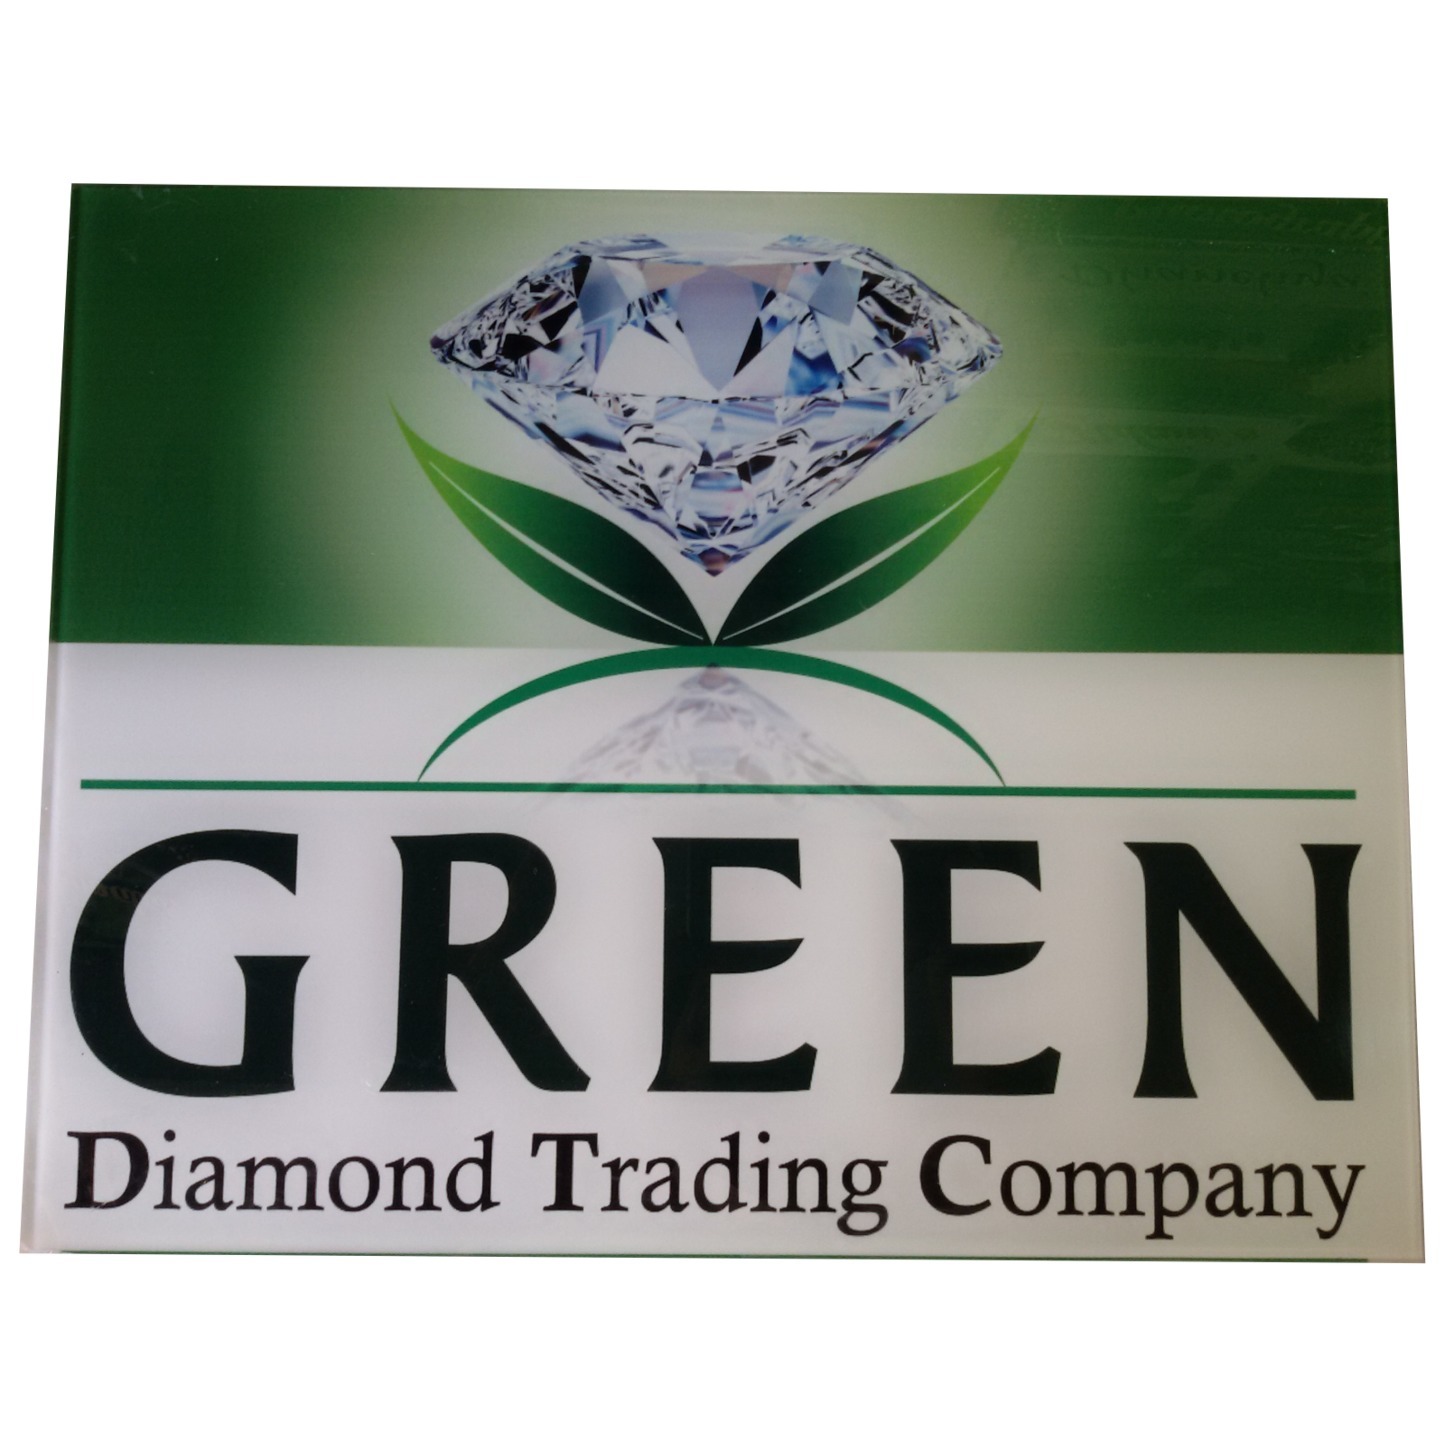 Green Diamond Trading Company